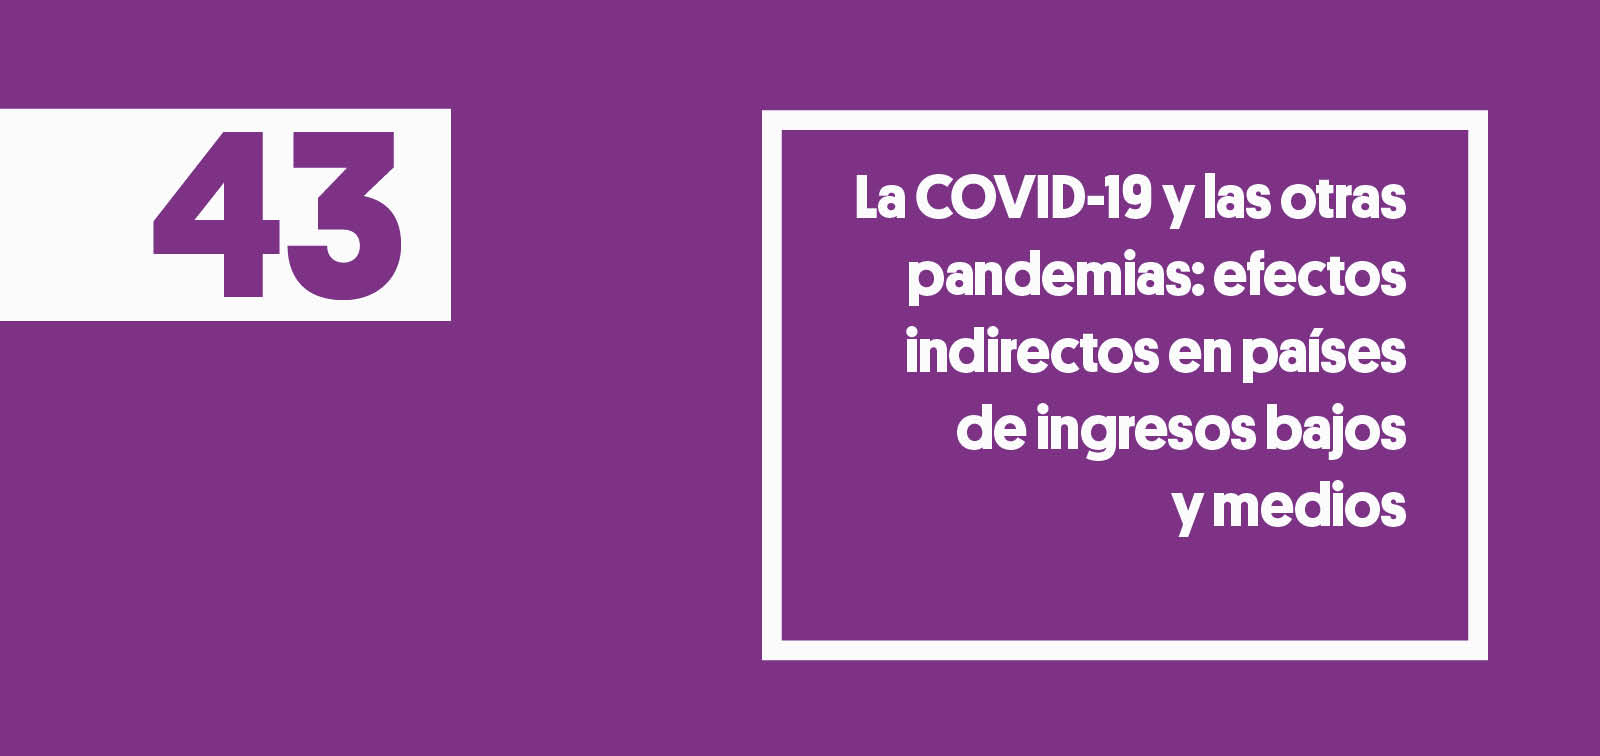 COVID19 pandemias paises bajos ingresos